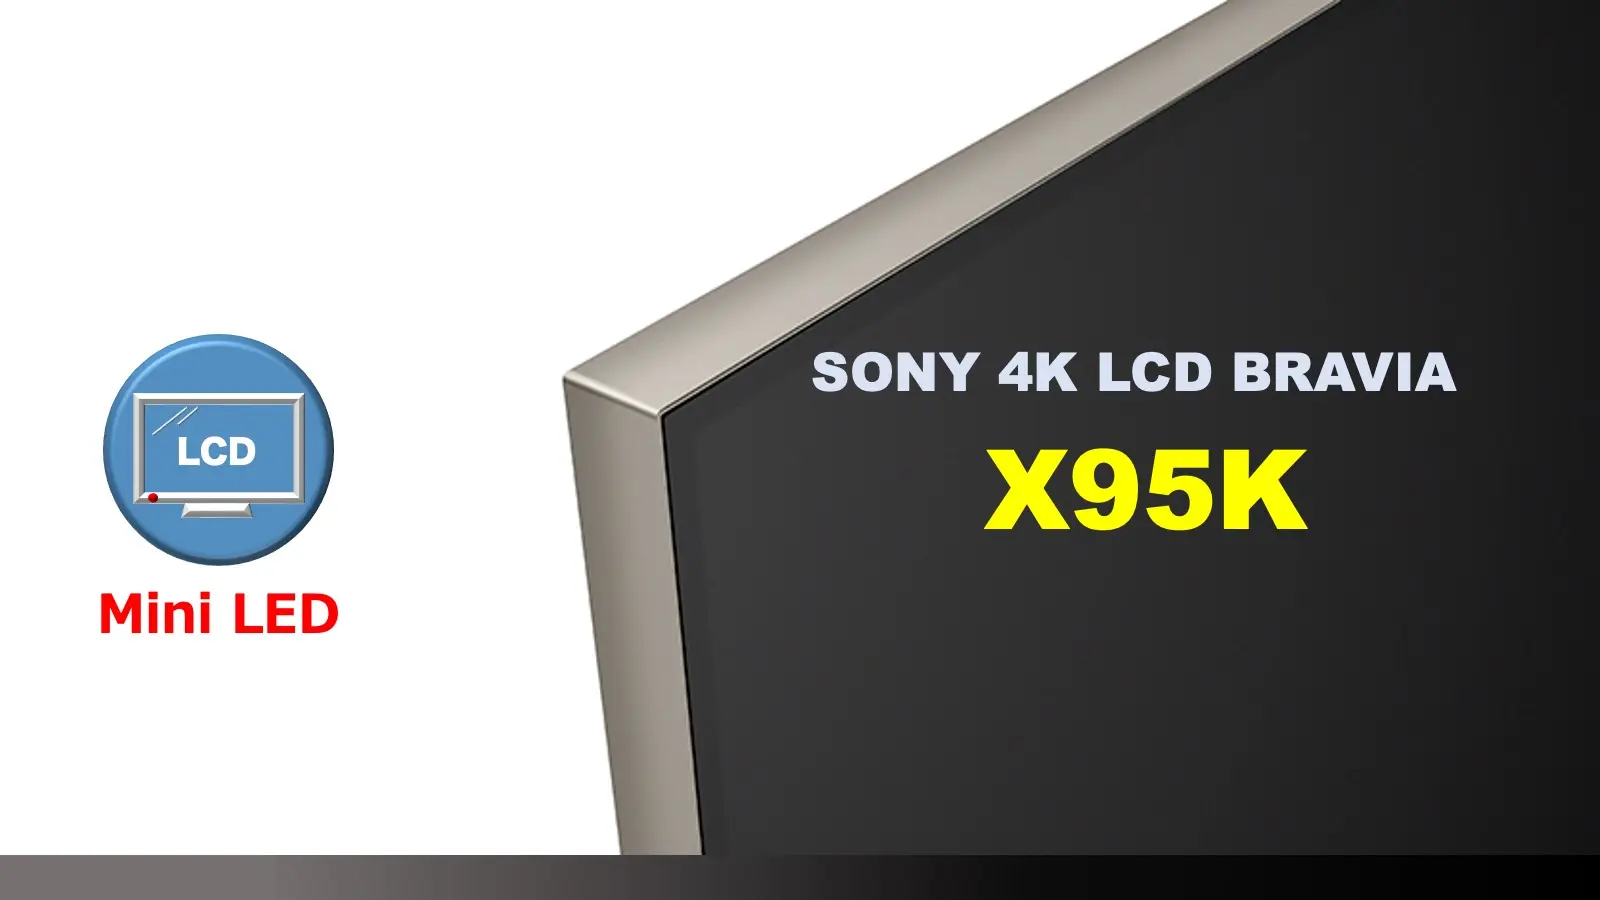 ソニー4K Mini LED 液晶ブラビア X95Kレビュー記事用のオリジナルアイキャッチ画像